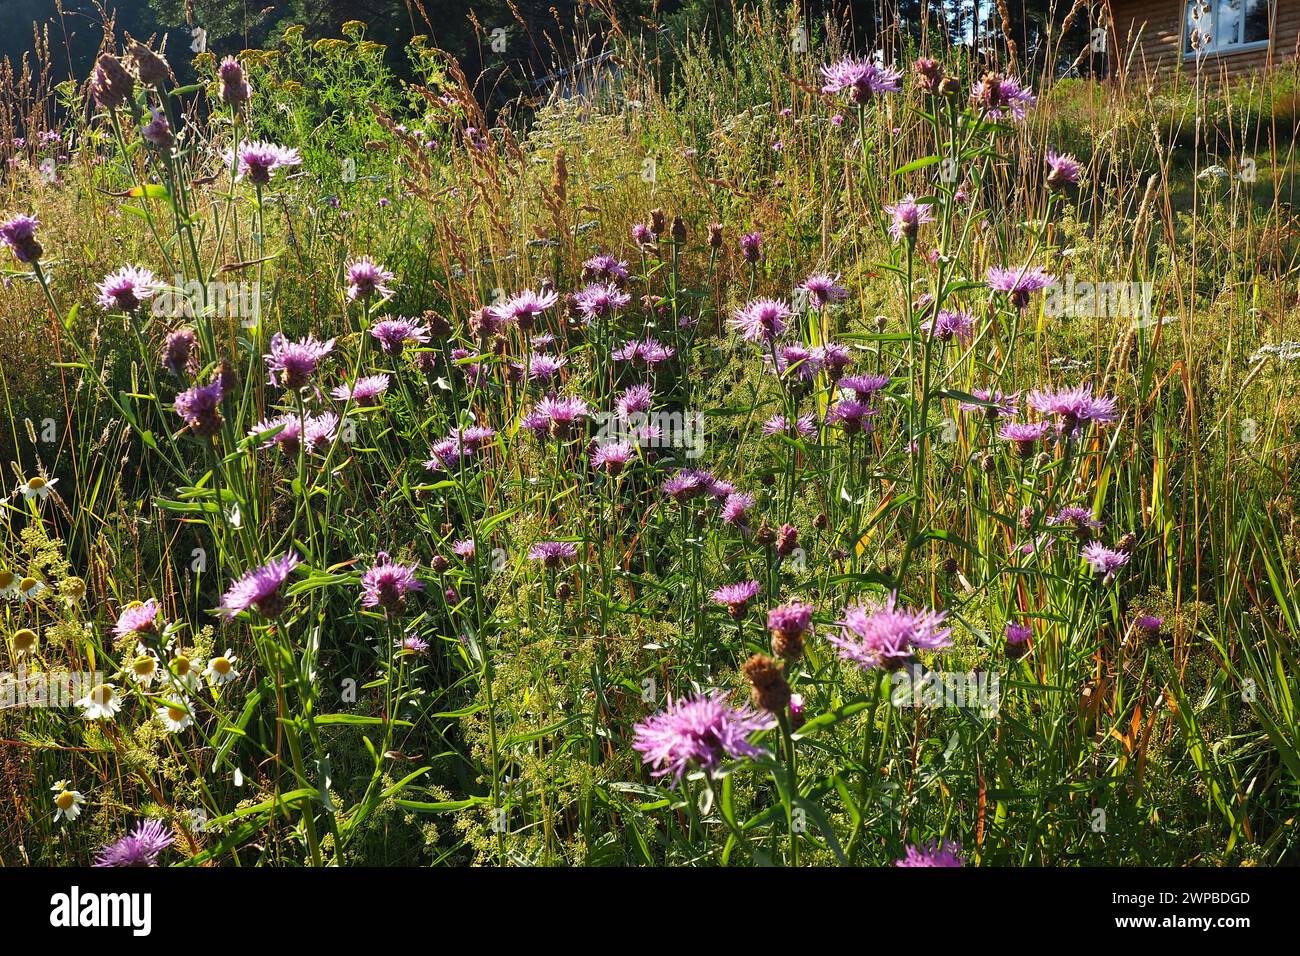 Centaurea jacea est une plante herbacée des champs, une espèce du genre Cornflower de la famille des Asteraceae, ou Compositae. Pousse dans les prairies Banque D'Images